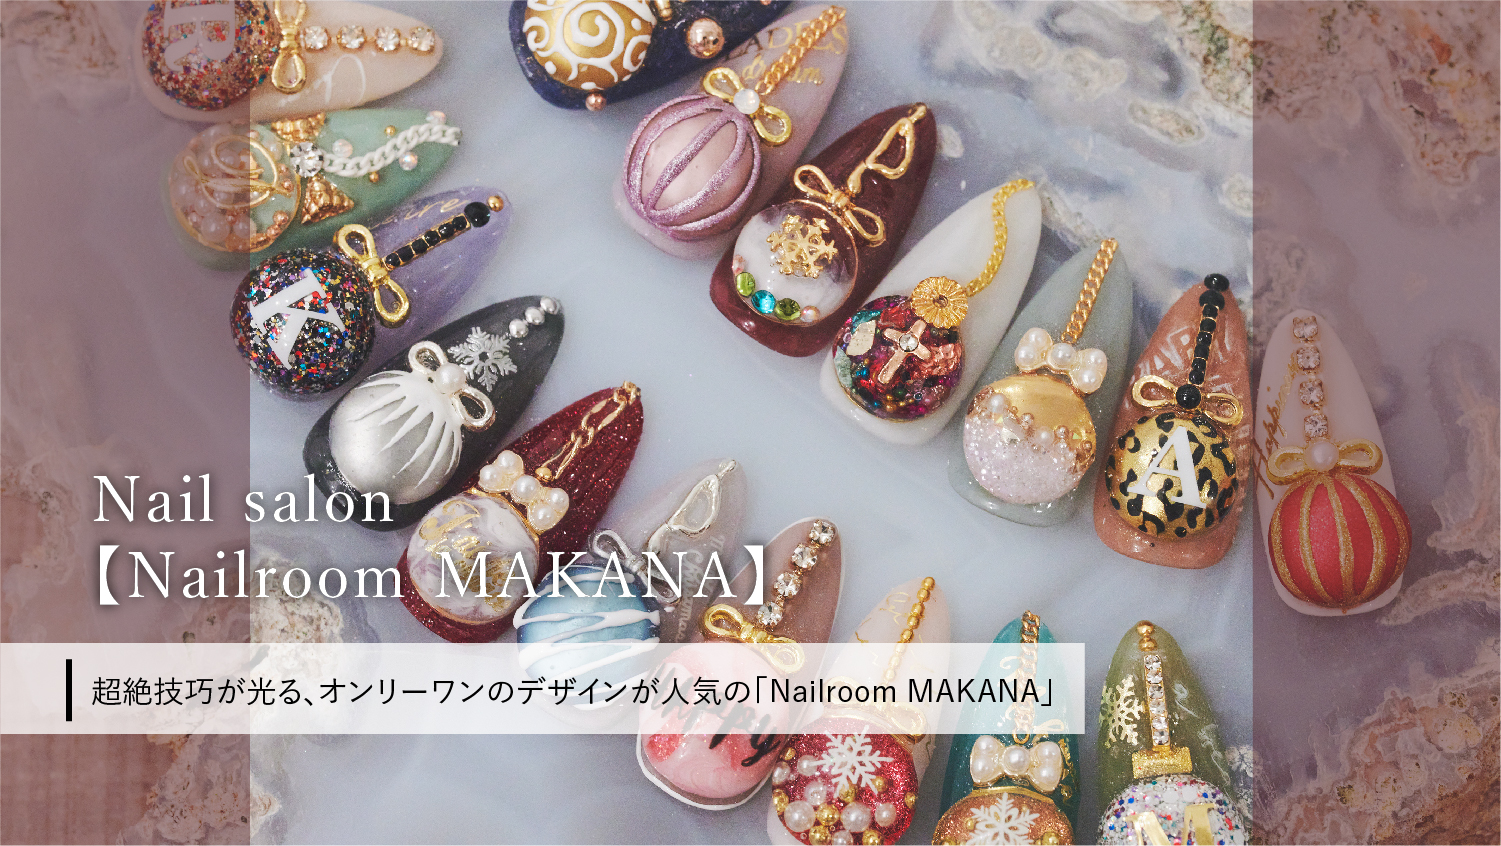 超絶技巧が光る、オンリーワンのデザインが人気の「Nailroom MAKANA」